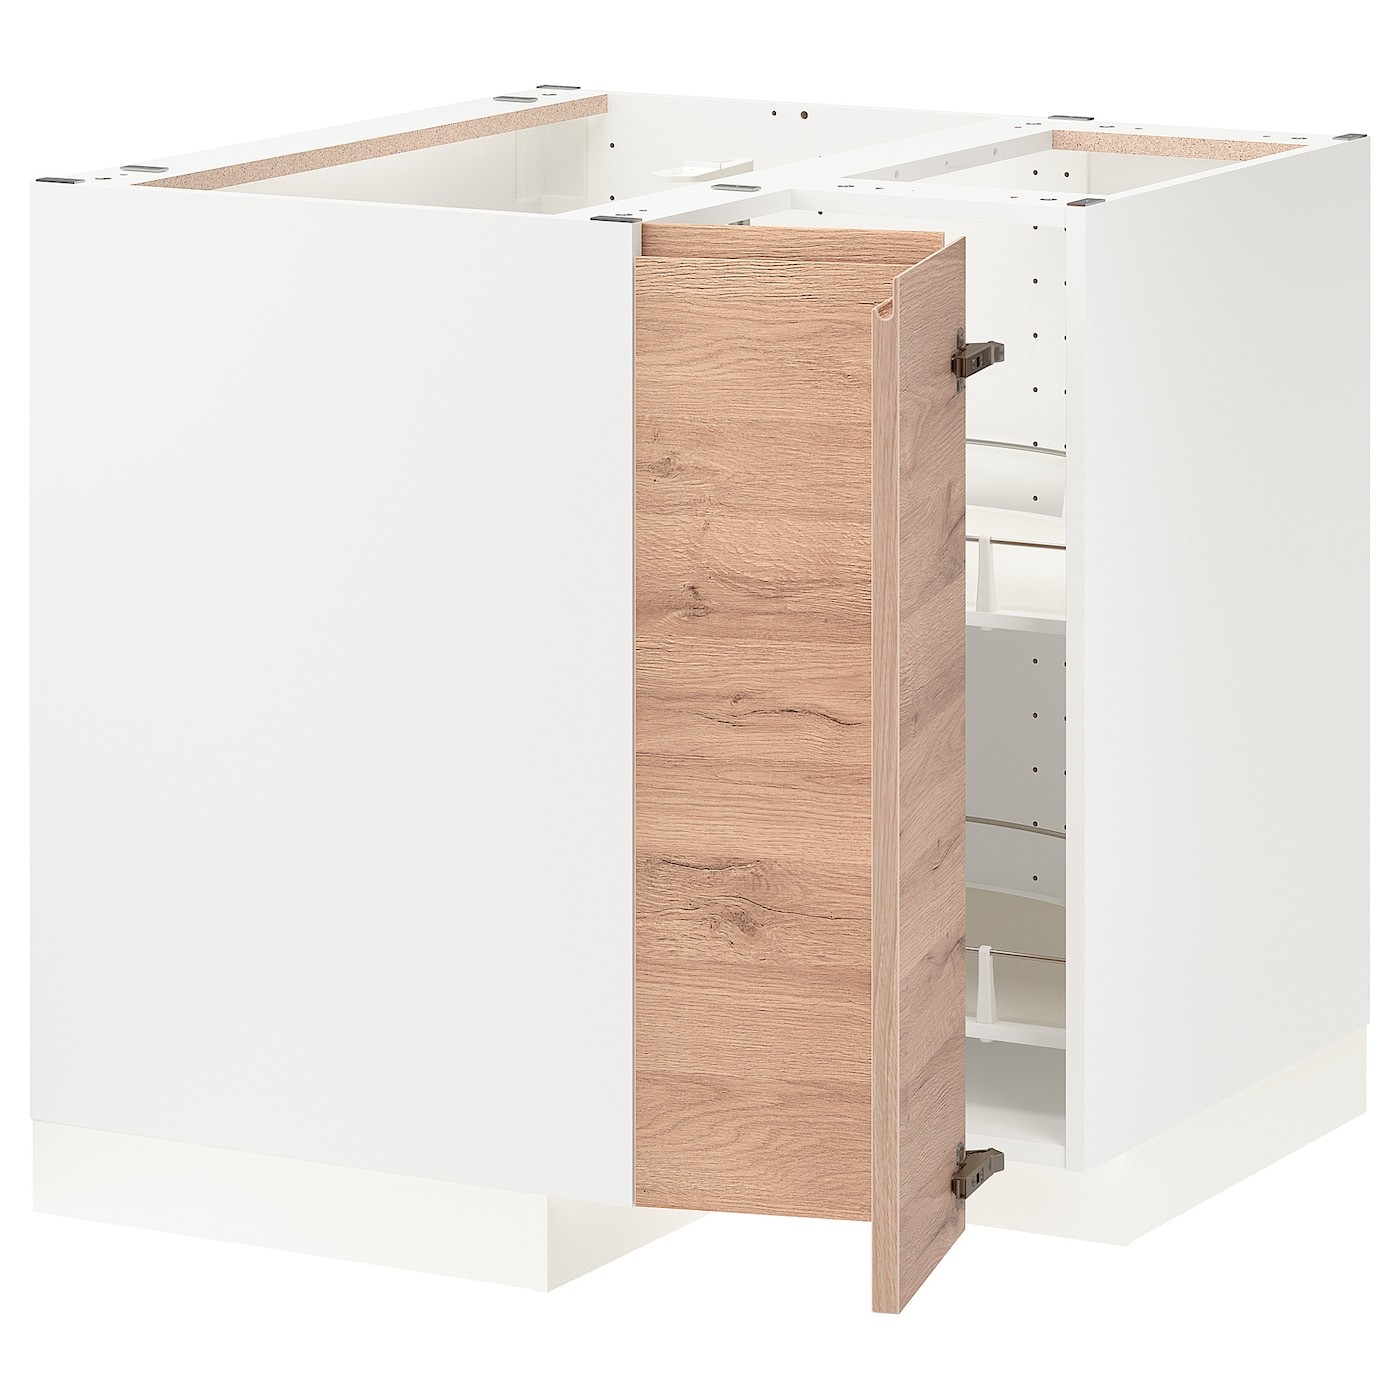 IKEA METOD МЕТОД Угловой напольный шкаф с каруселью, белый / Voxtorp имитация дуб, 88x88 см 69402189 | 694.021.89